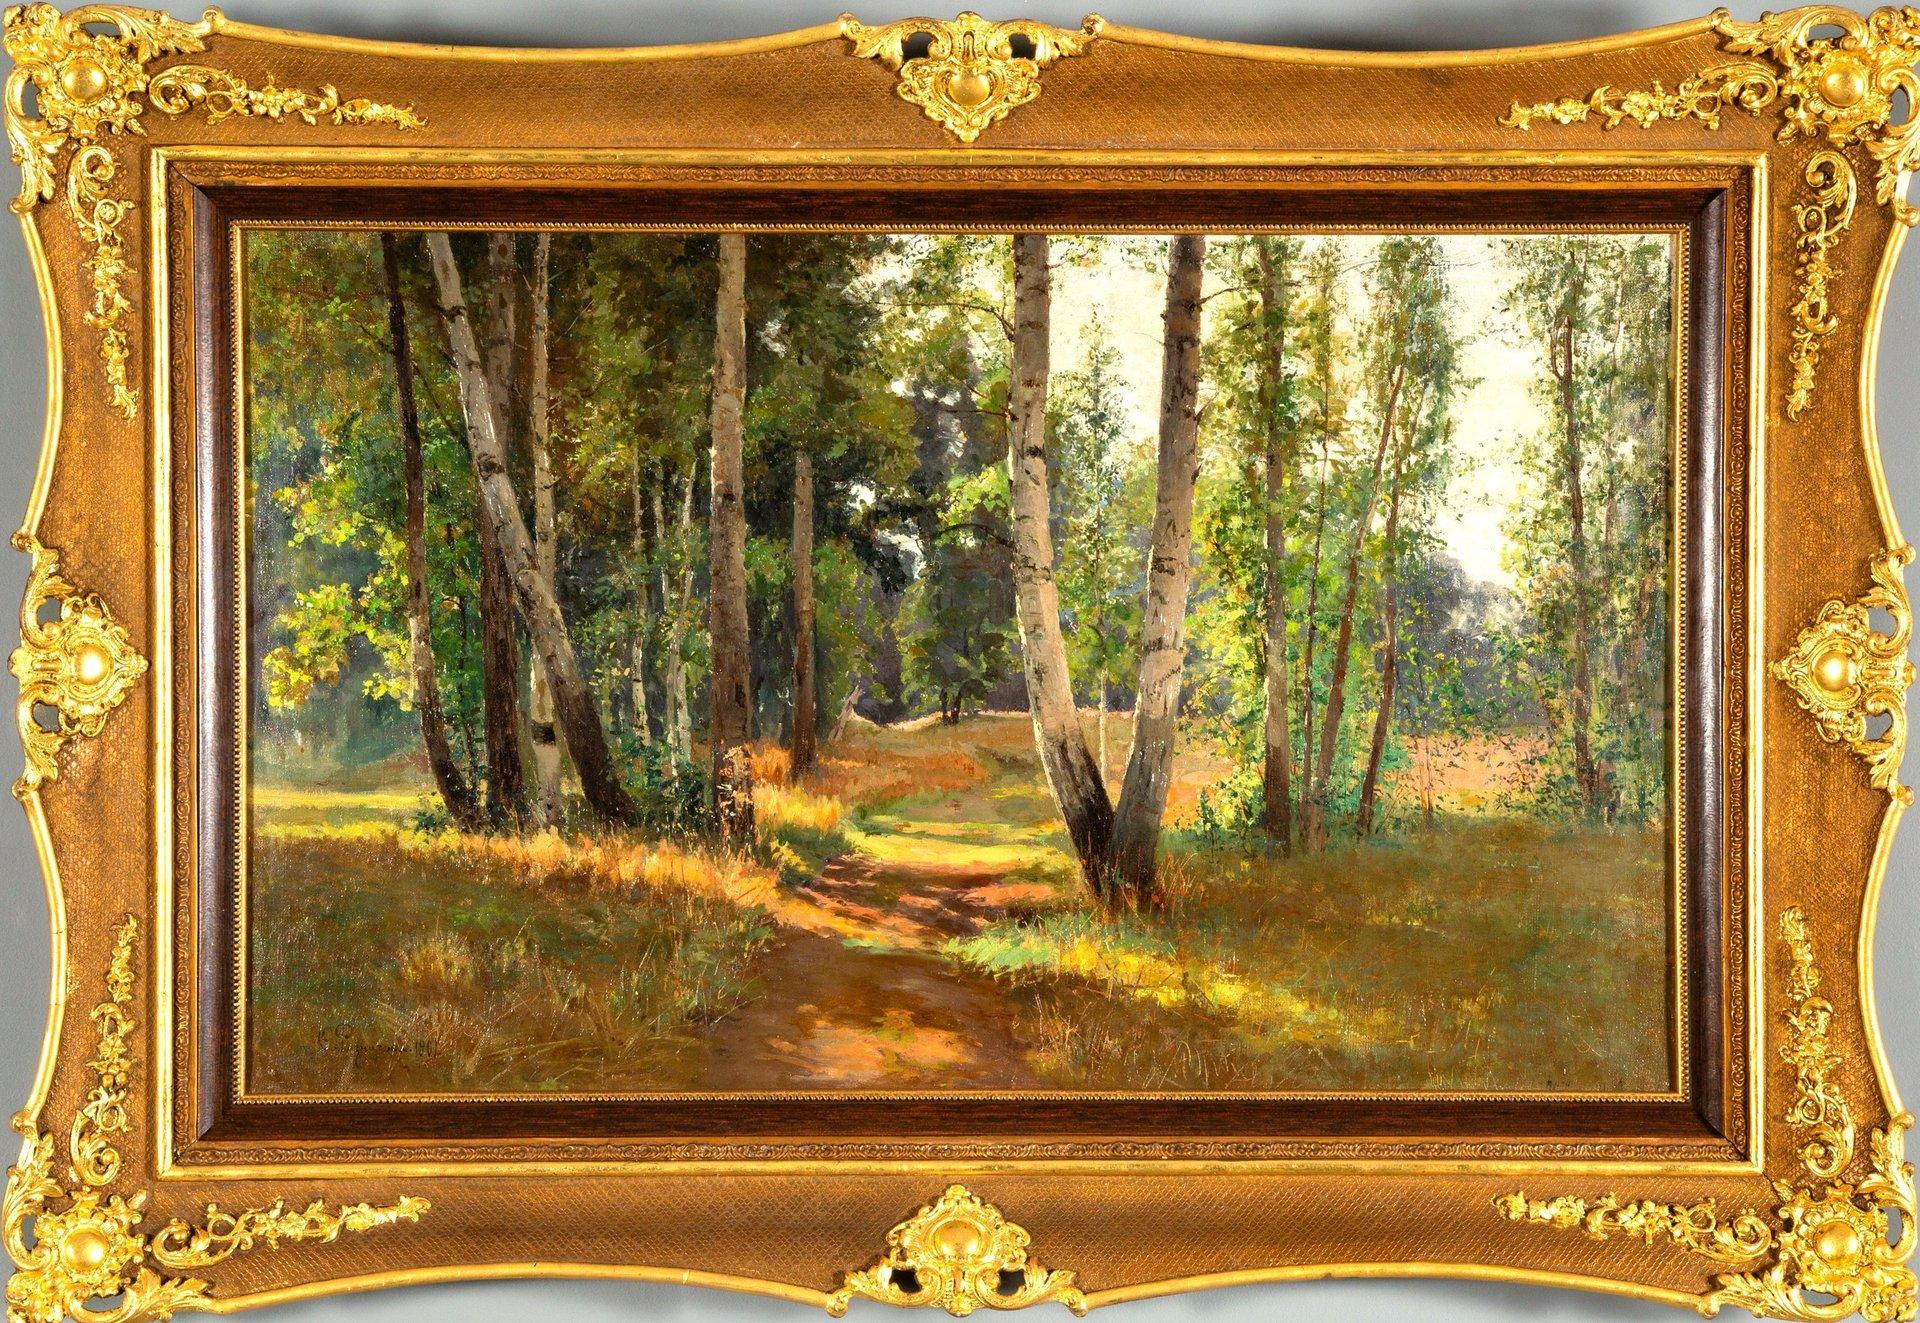 Vue d'un sous bois, tableau daté 1901, huile sur toile de Feodor Petrovich Rizni - Brown Landscape Painting by Riznischenko Feodor Petrovich